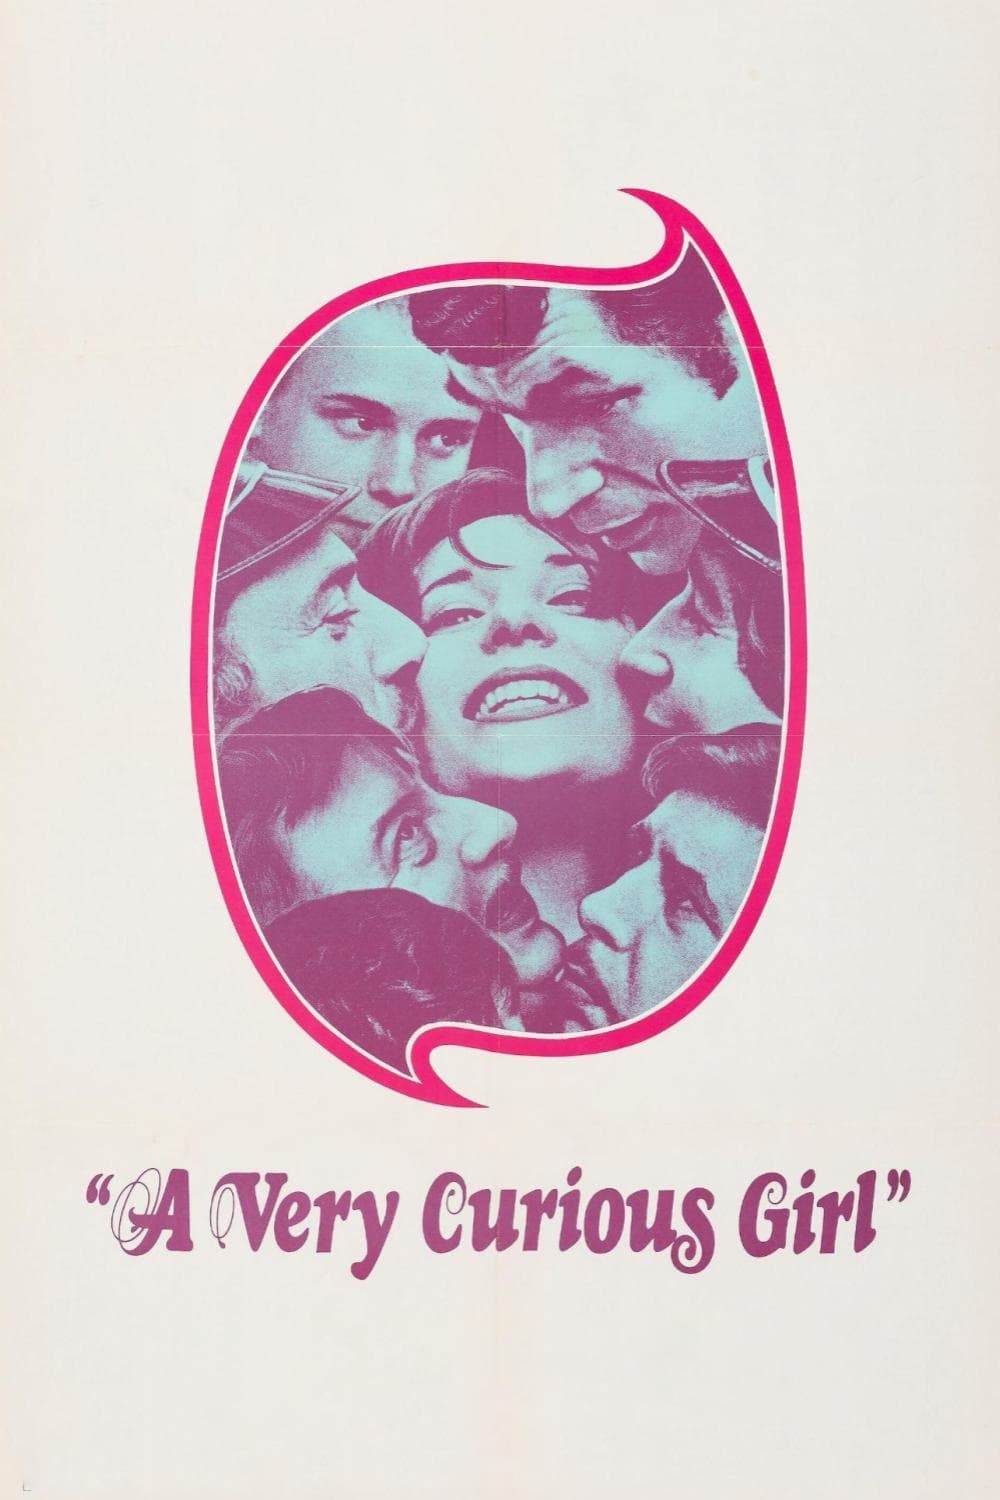 A Very Curious Girl (1969)